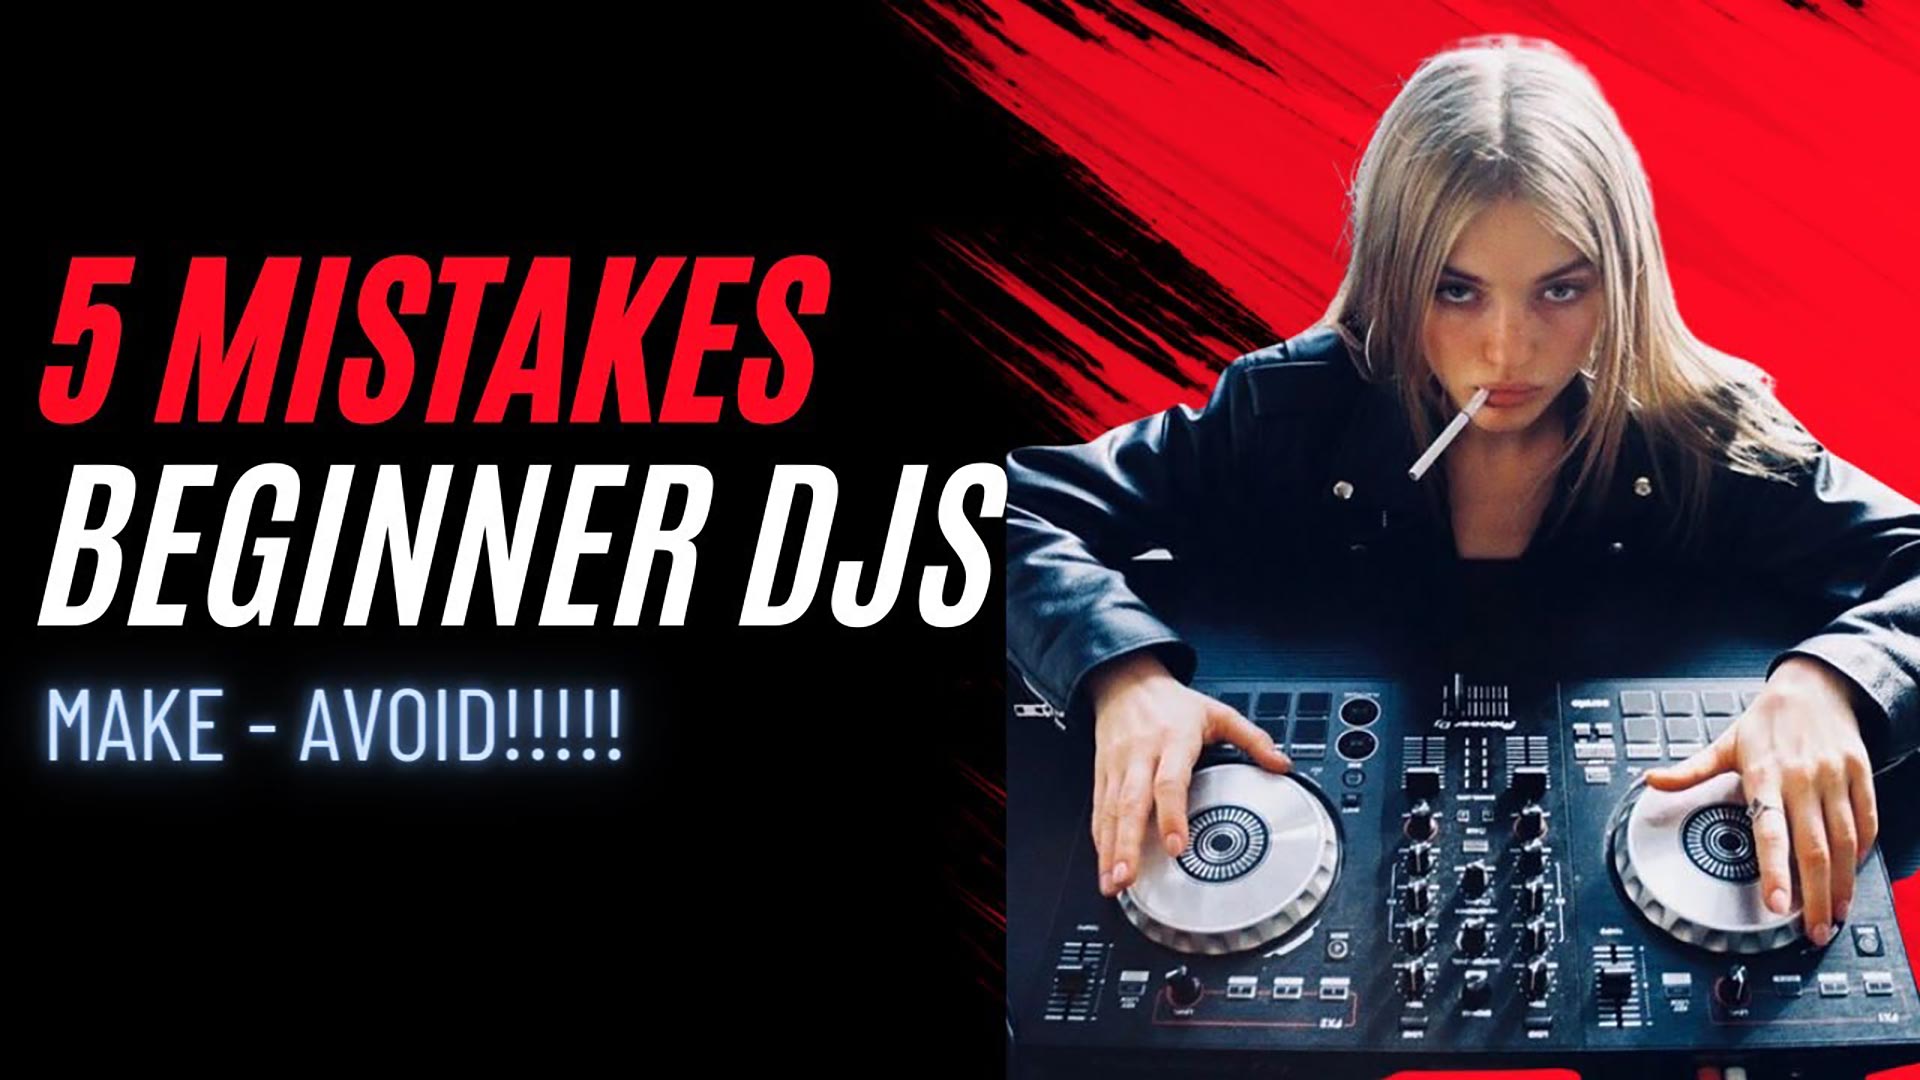 5 Mistakes Beginner DJs Make Image